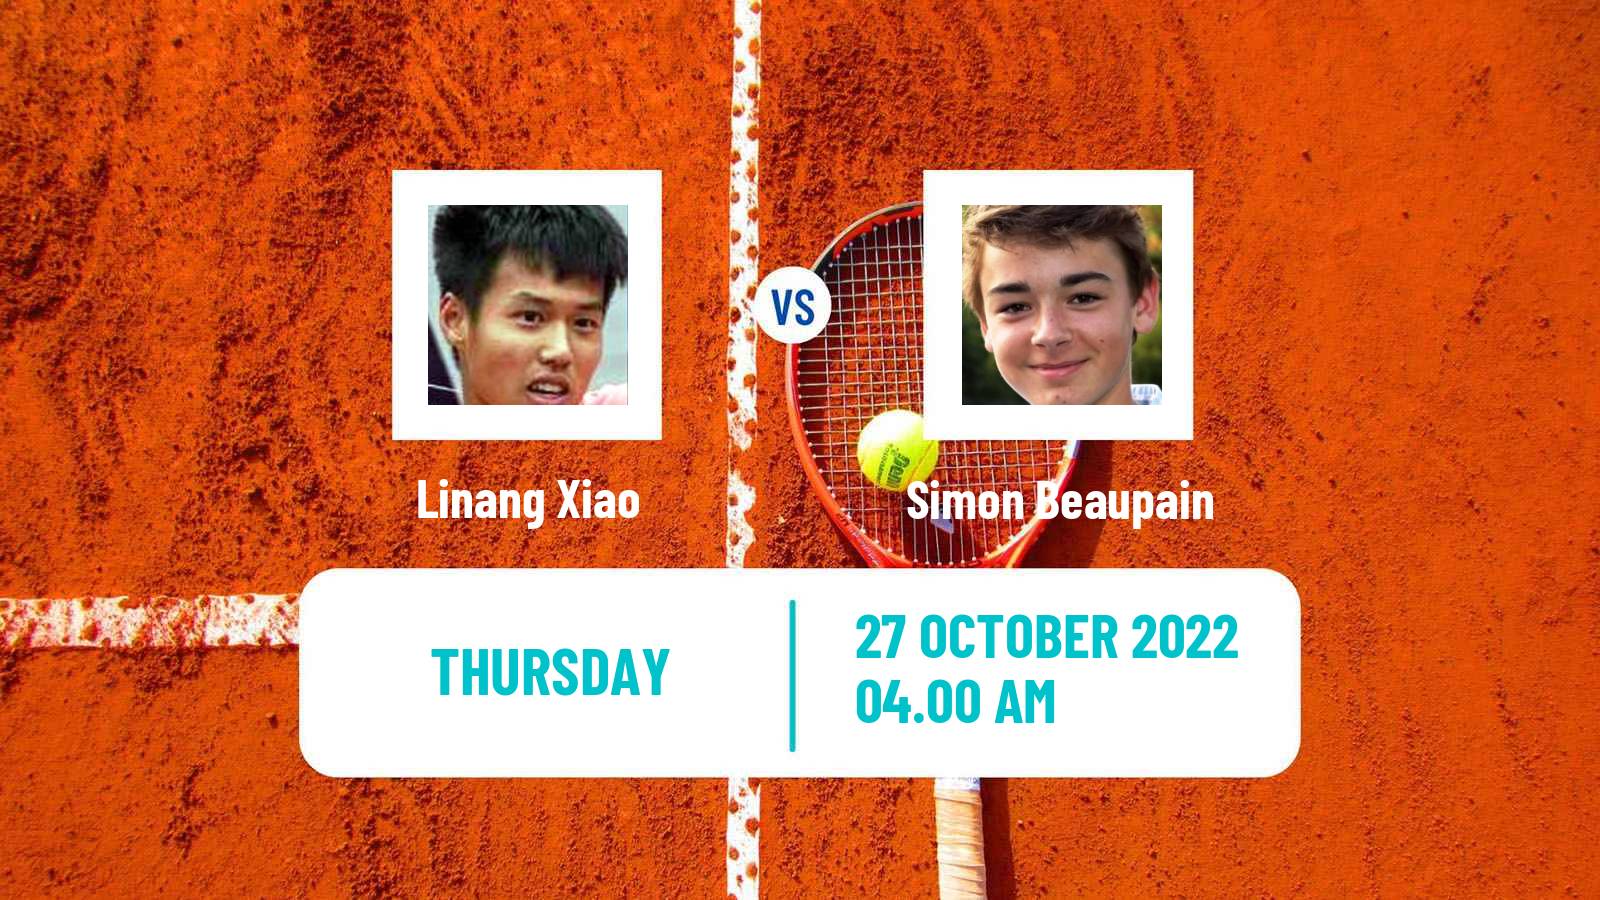 Tennis ITF Tournaments Linang Xiao - Simon Beaupain